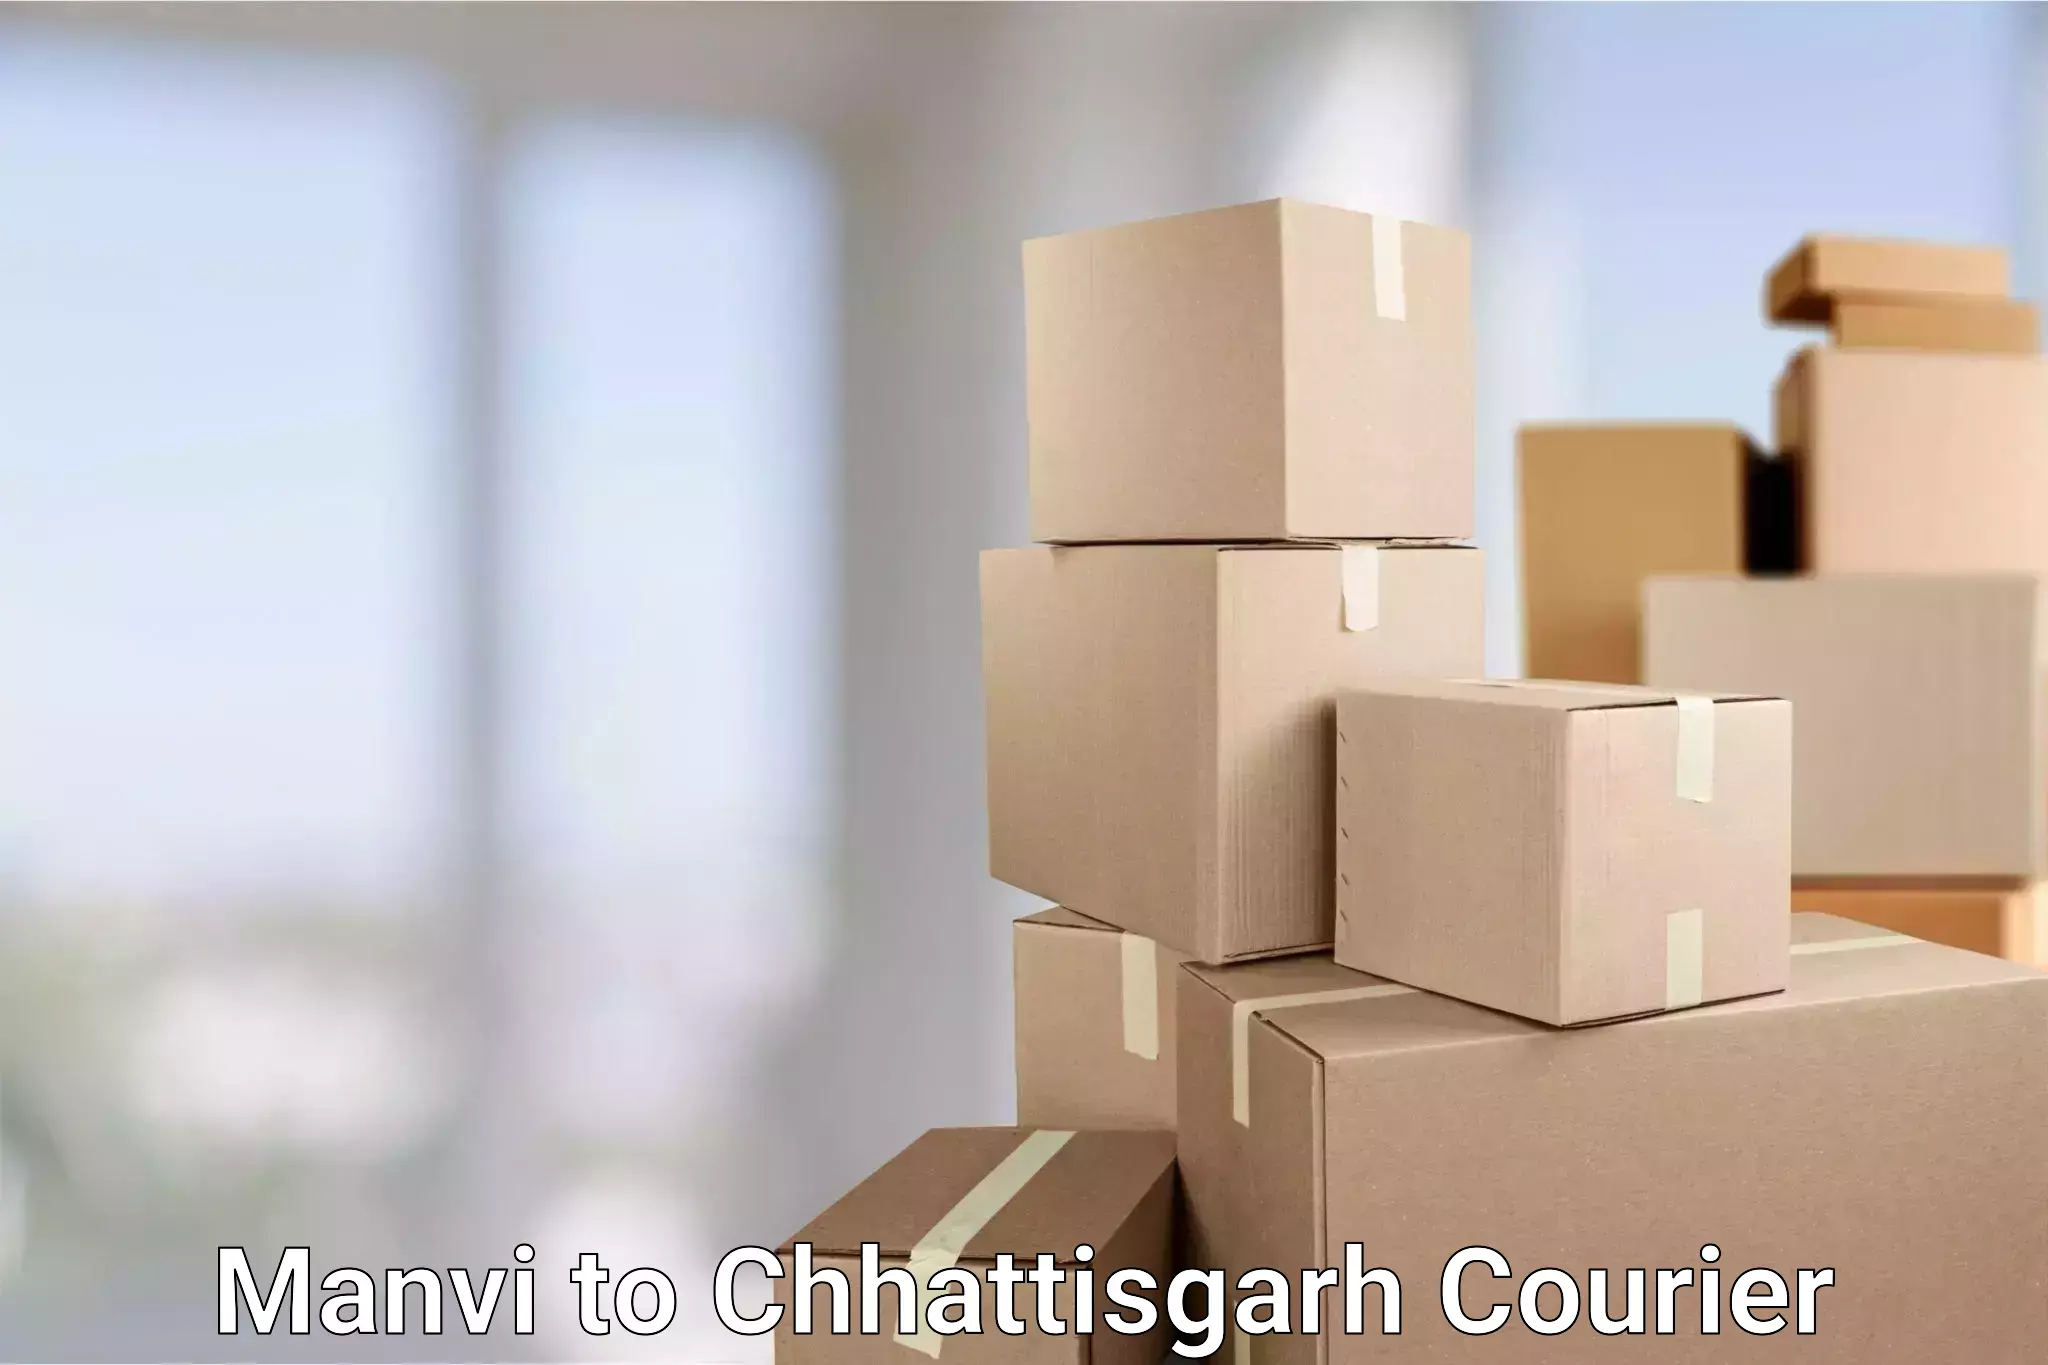 Courier service comparison Manvi to Chhattisgarh